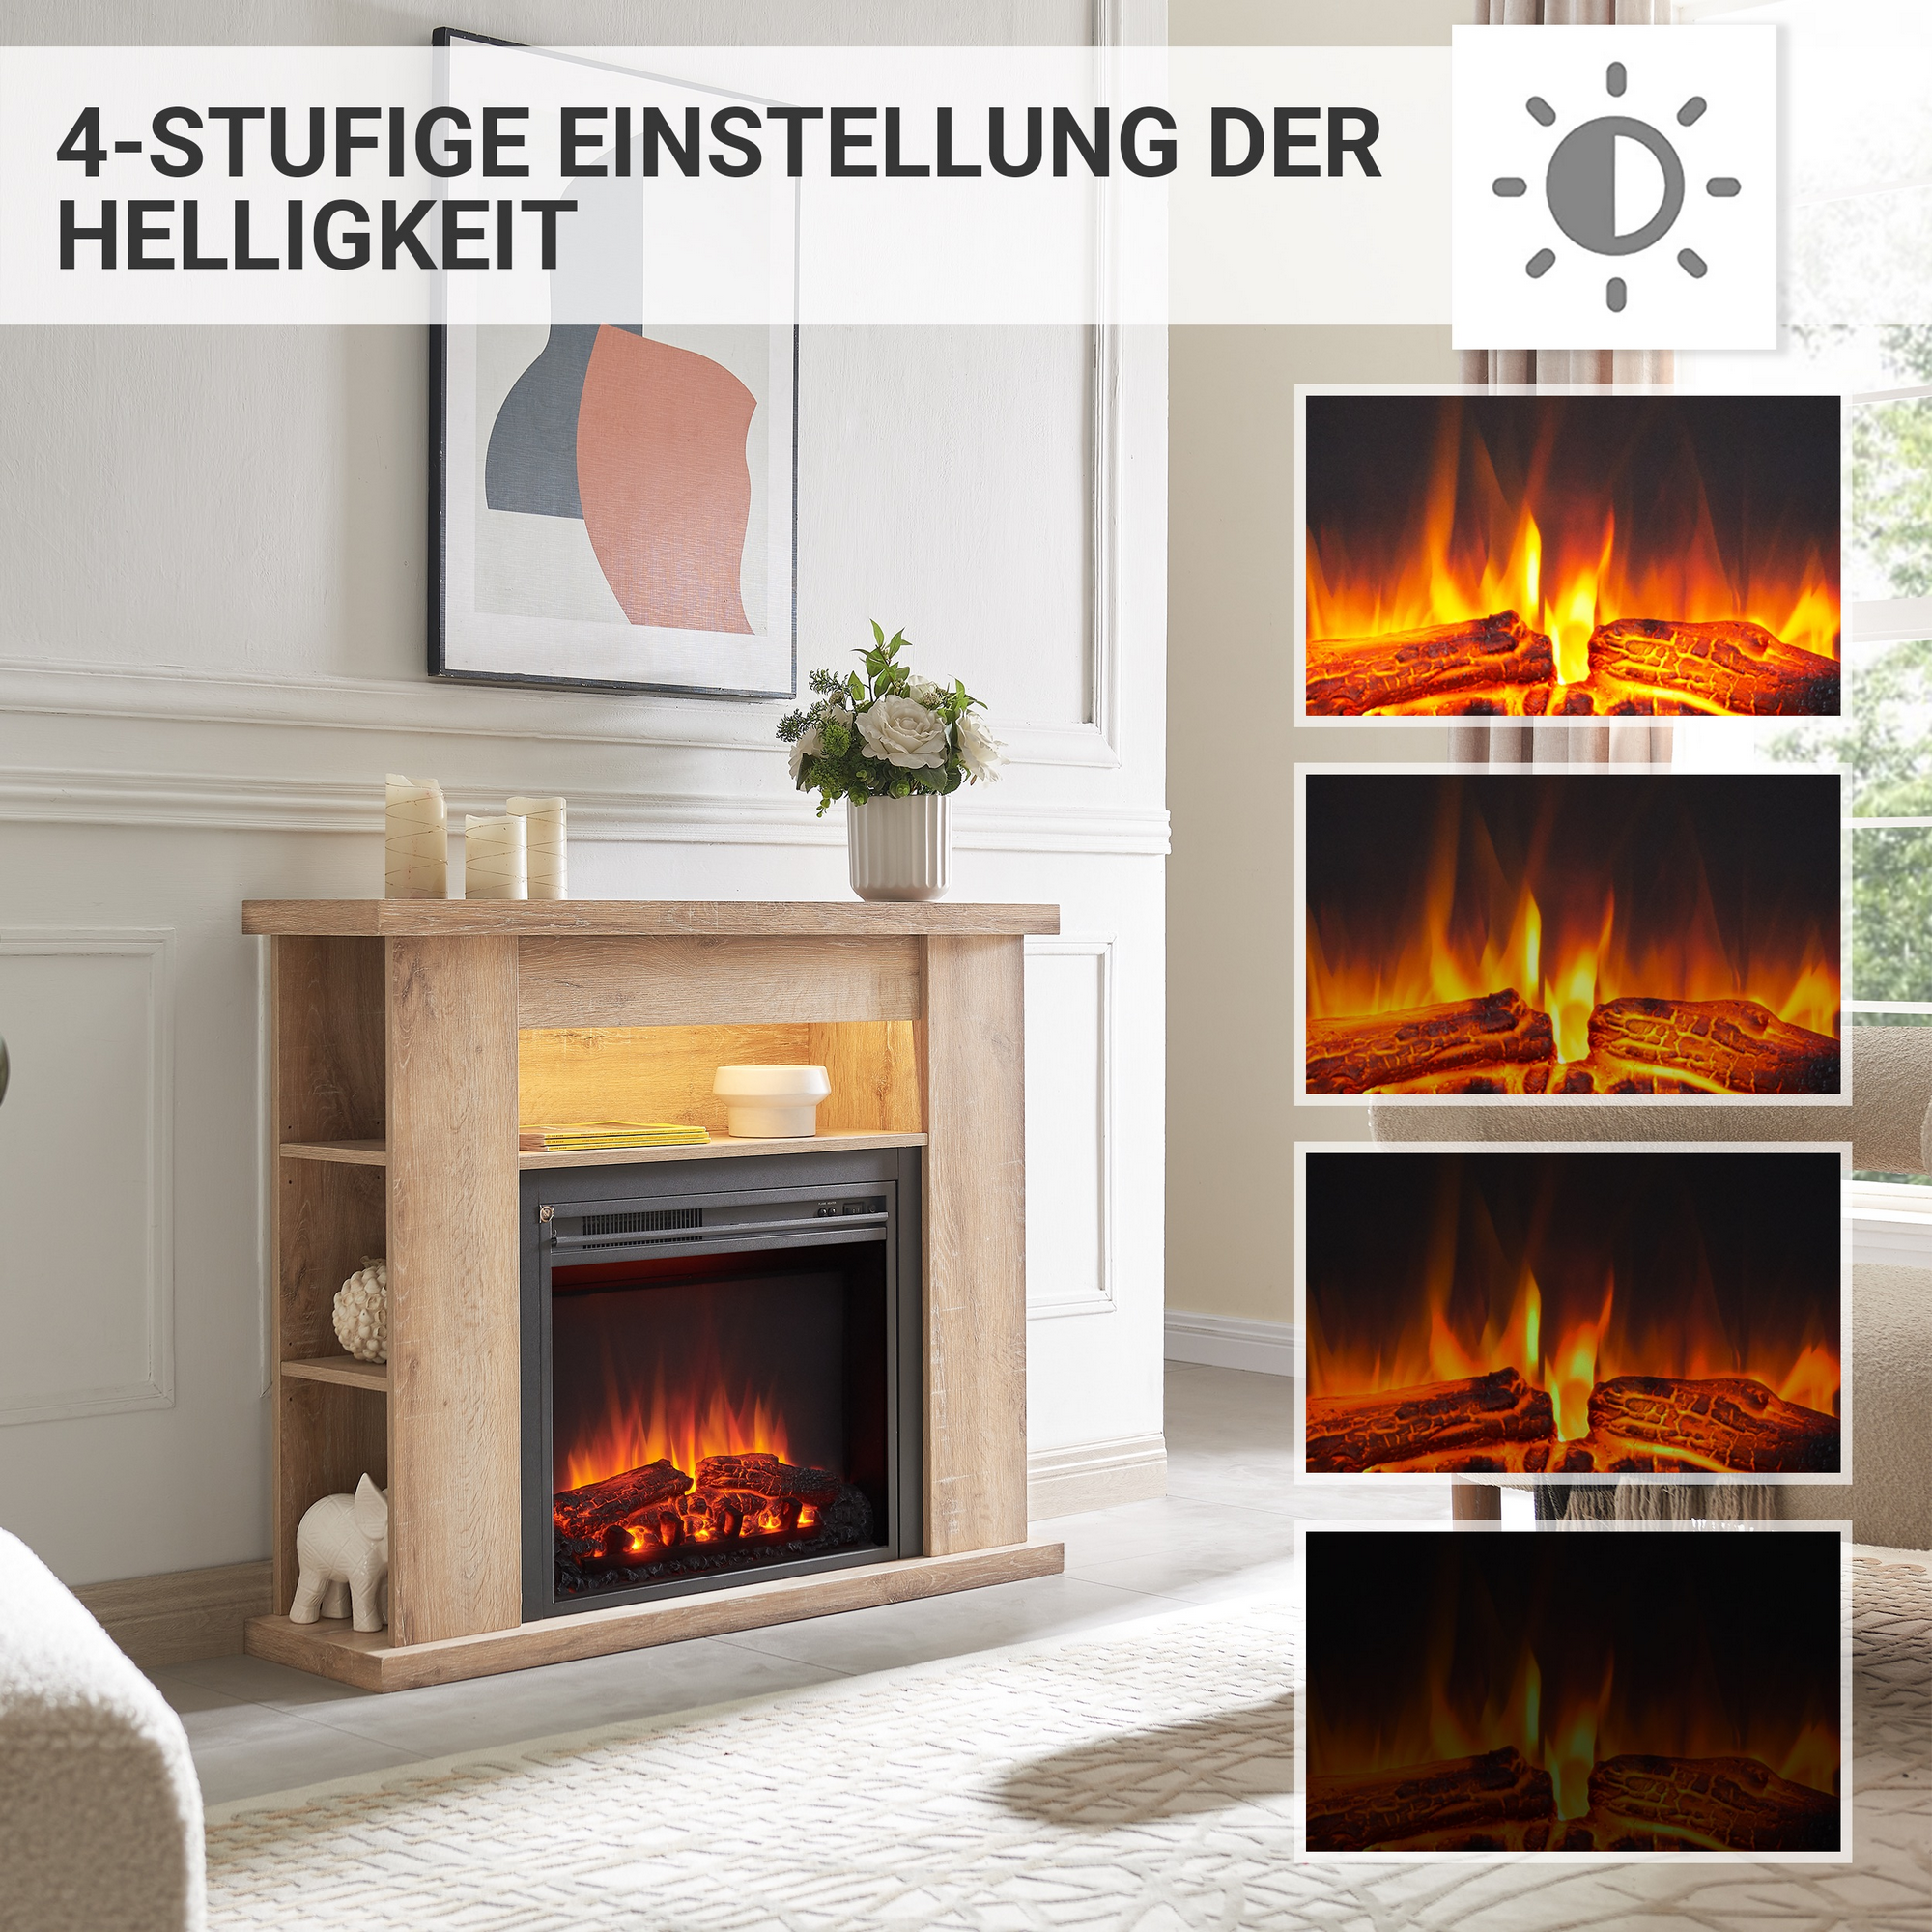 Elektro-Standkamin 'William' hellbraun rustikal 2000 W, 3D-Flammeneffekt Fernbedienung 110 x 88 x 28 cm + product picture